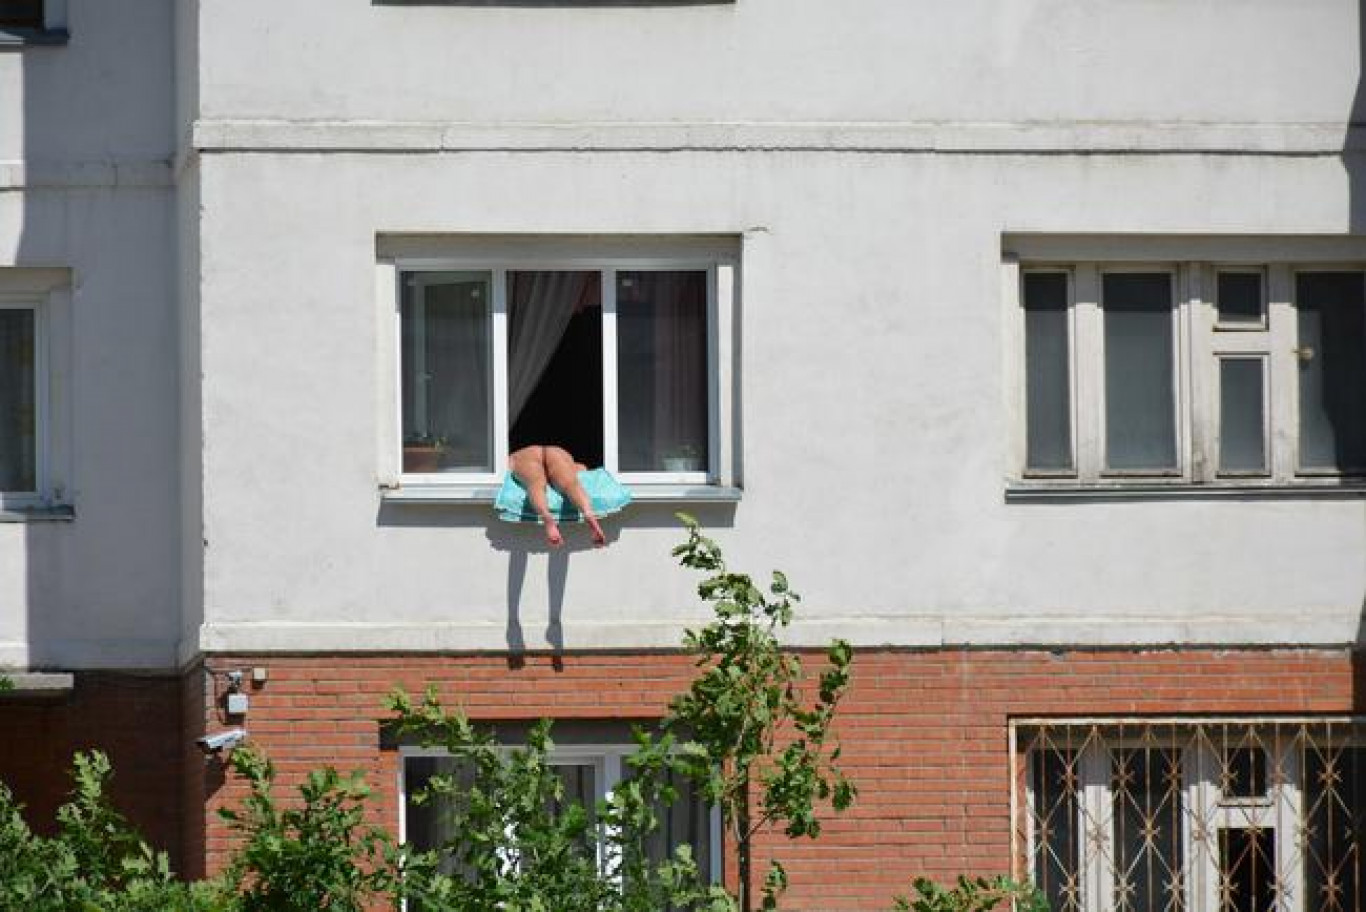 Botrány a Kropotkin utcában: elegük lett a szomszédoknak a félpucéran, ablakon kilógva napozó nőből - 444.hu